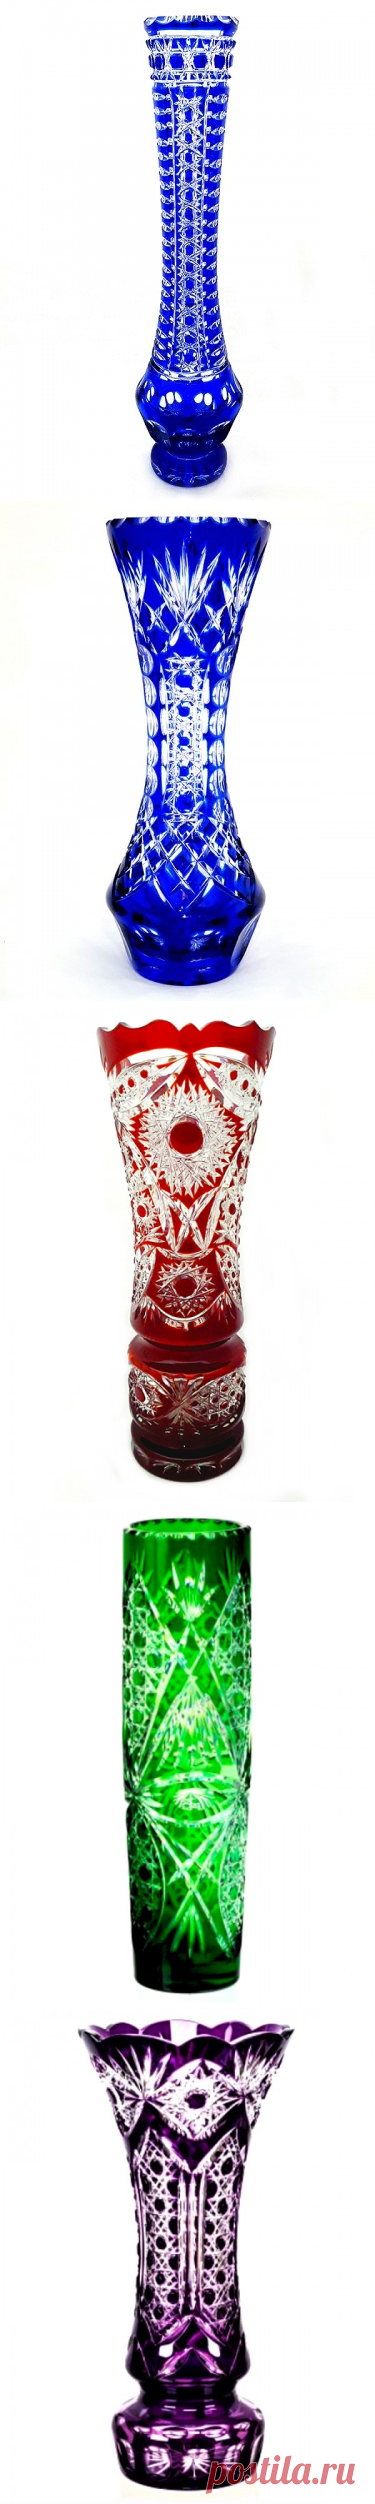 Хрустальная ваза из цветного хрусталя в Москве: Красная, Синяя, Желтая - Хрустальный Мир